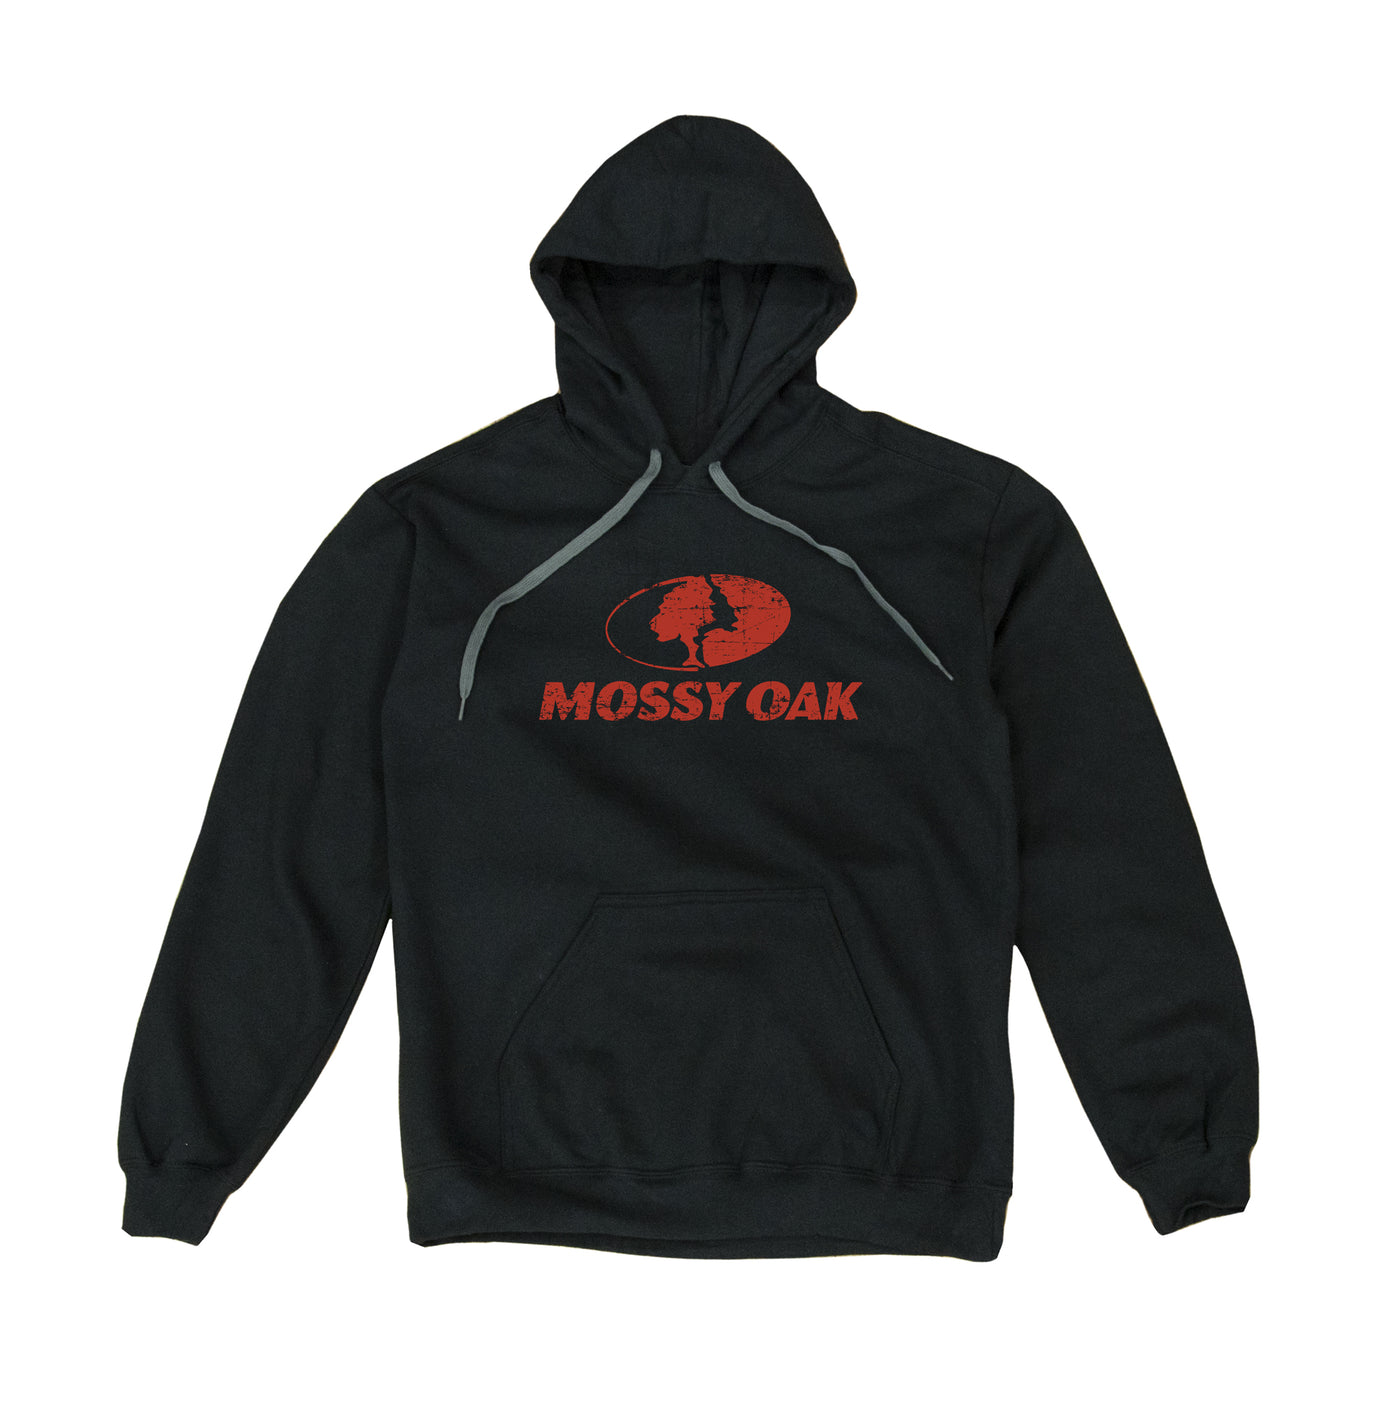 Mossy Oak Brand Hoodie Black Red